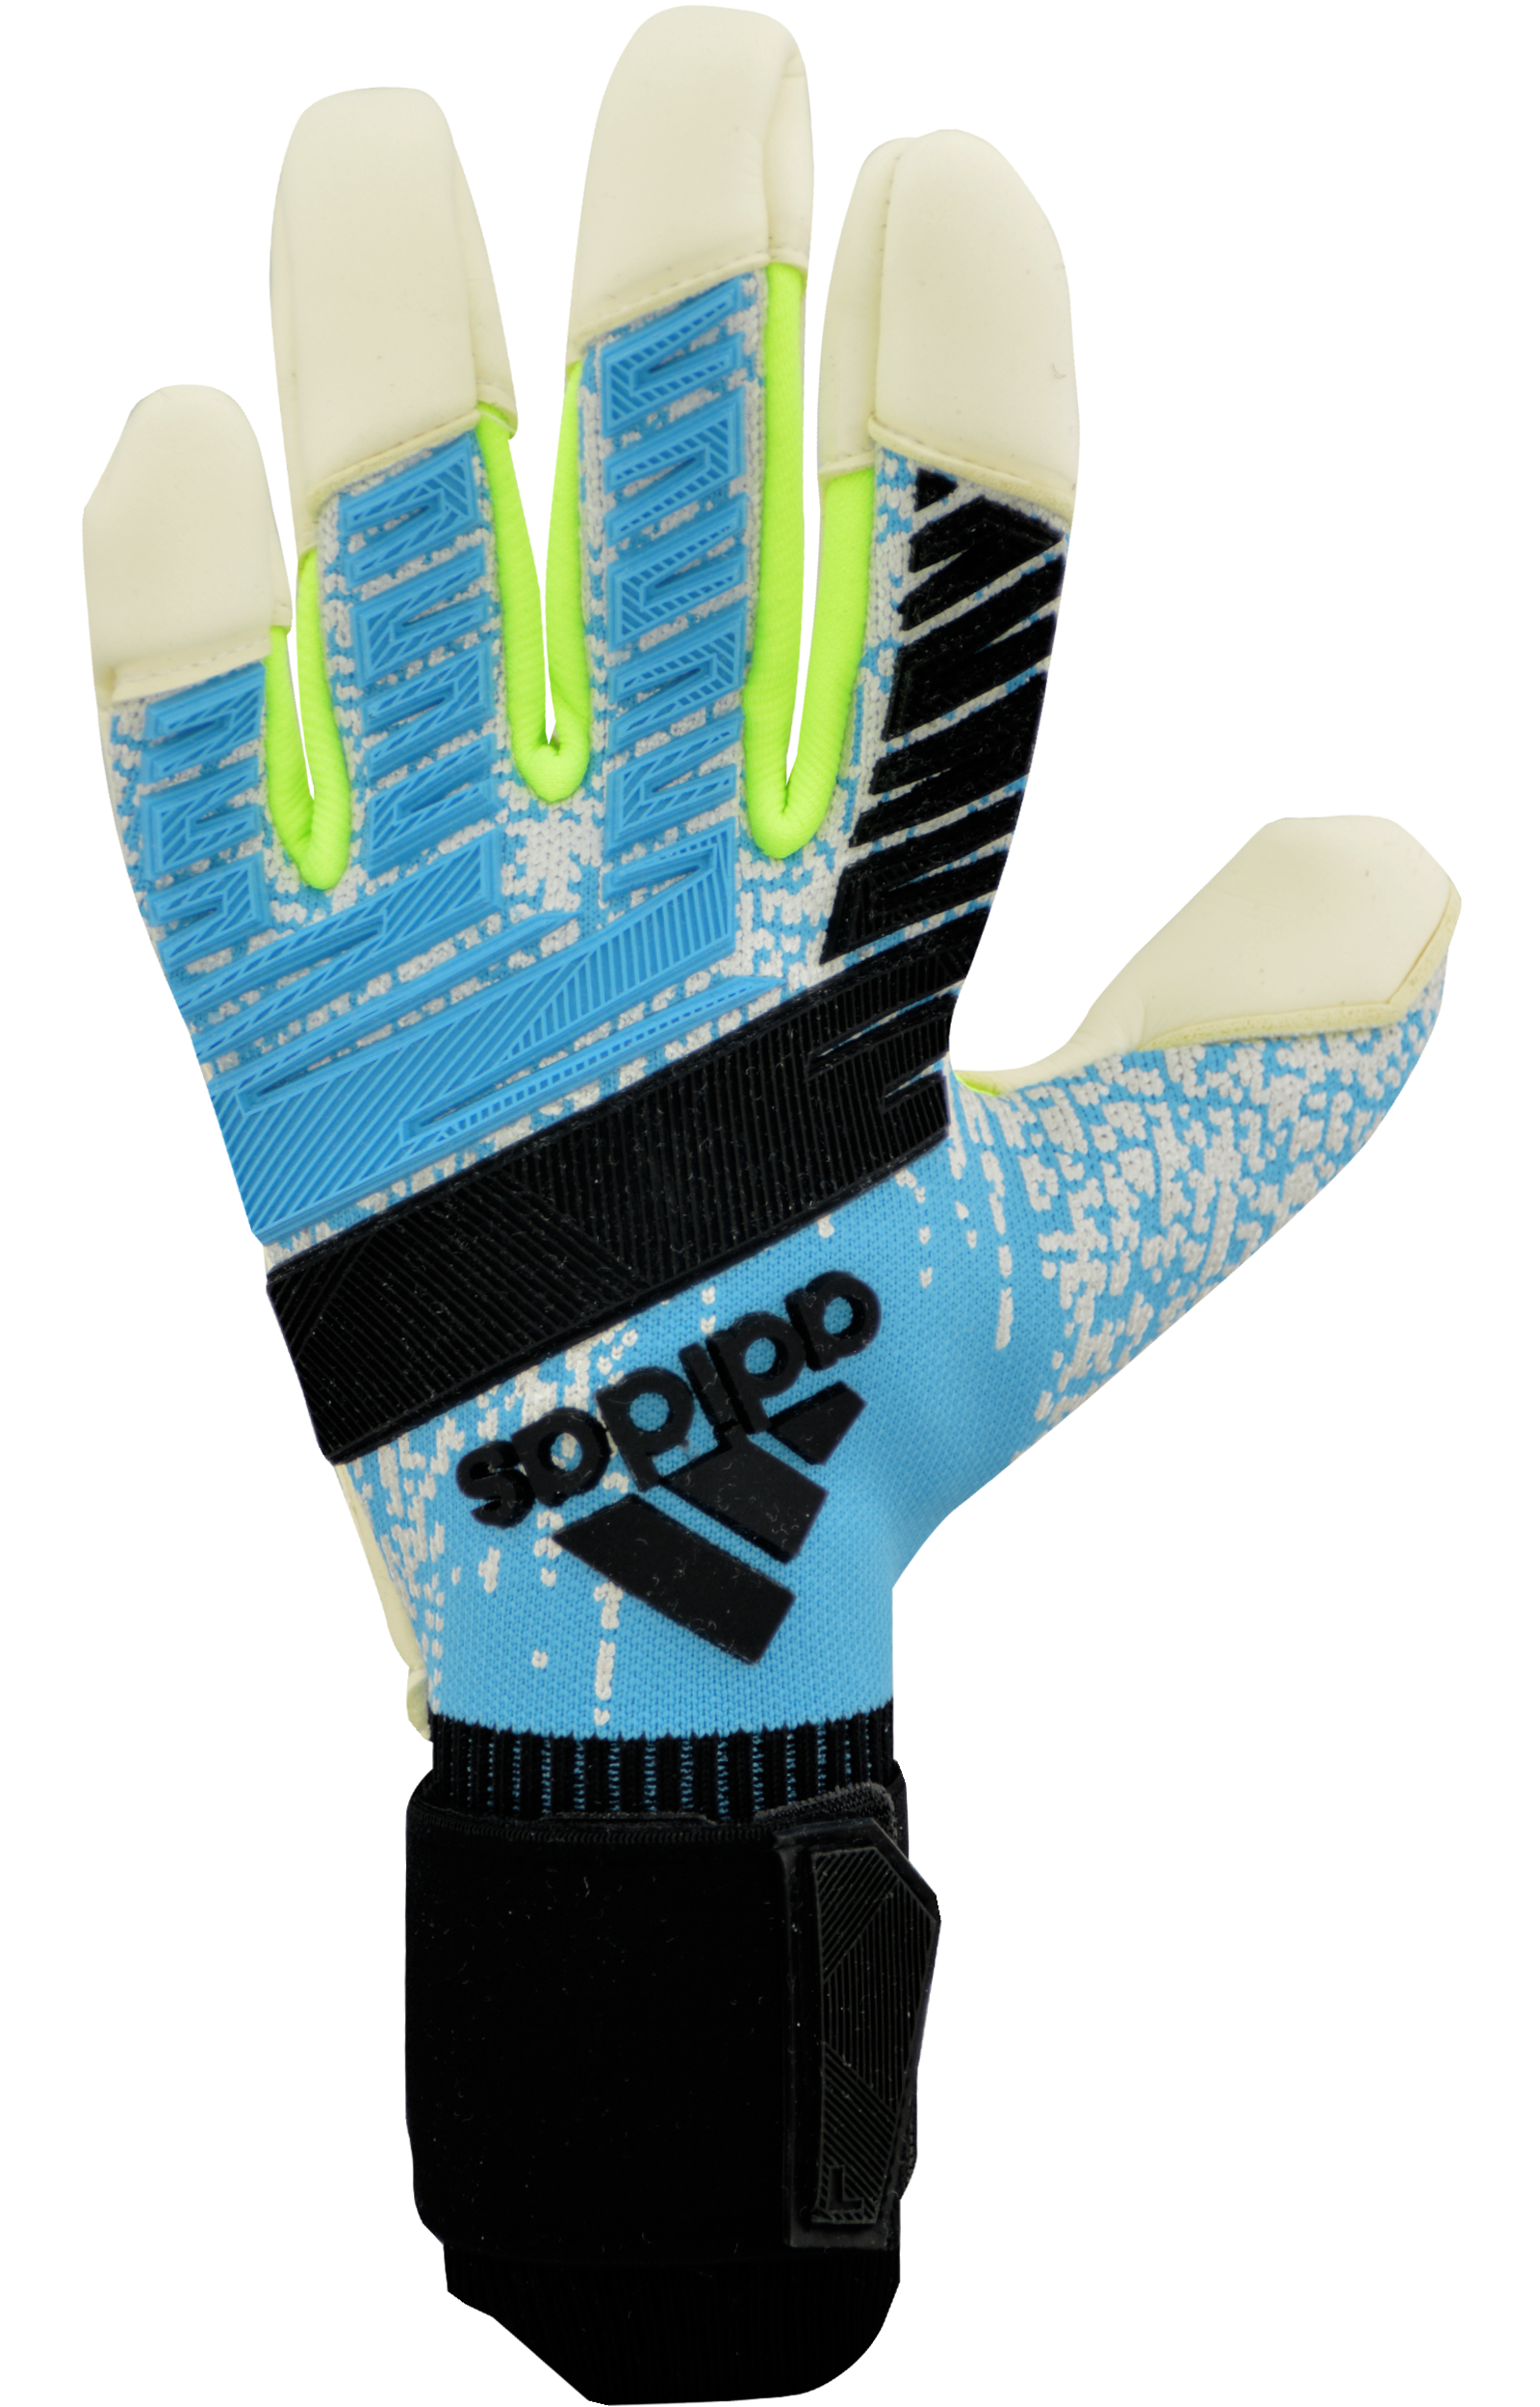 urg 1.0 gloves